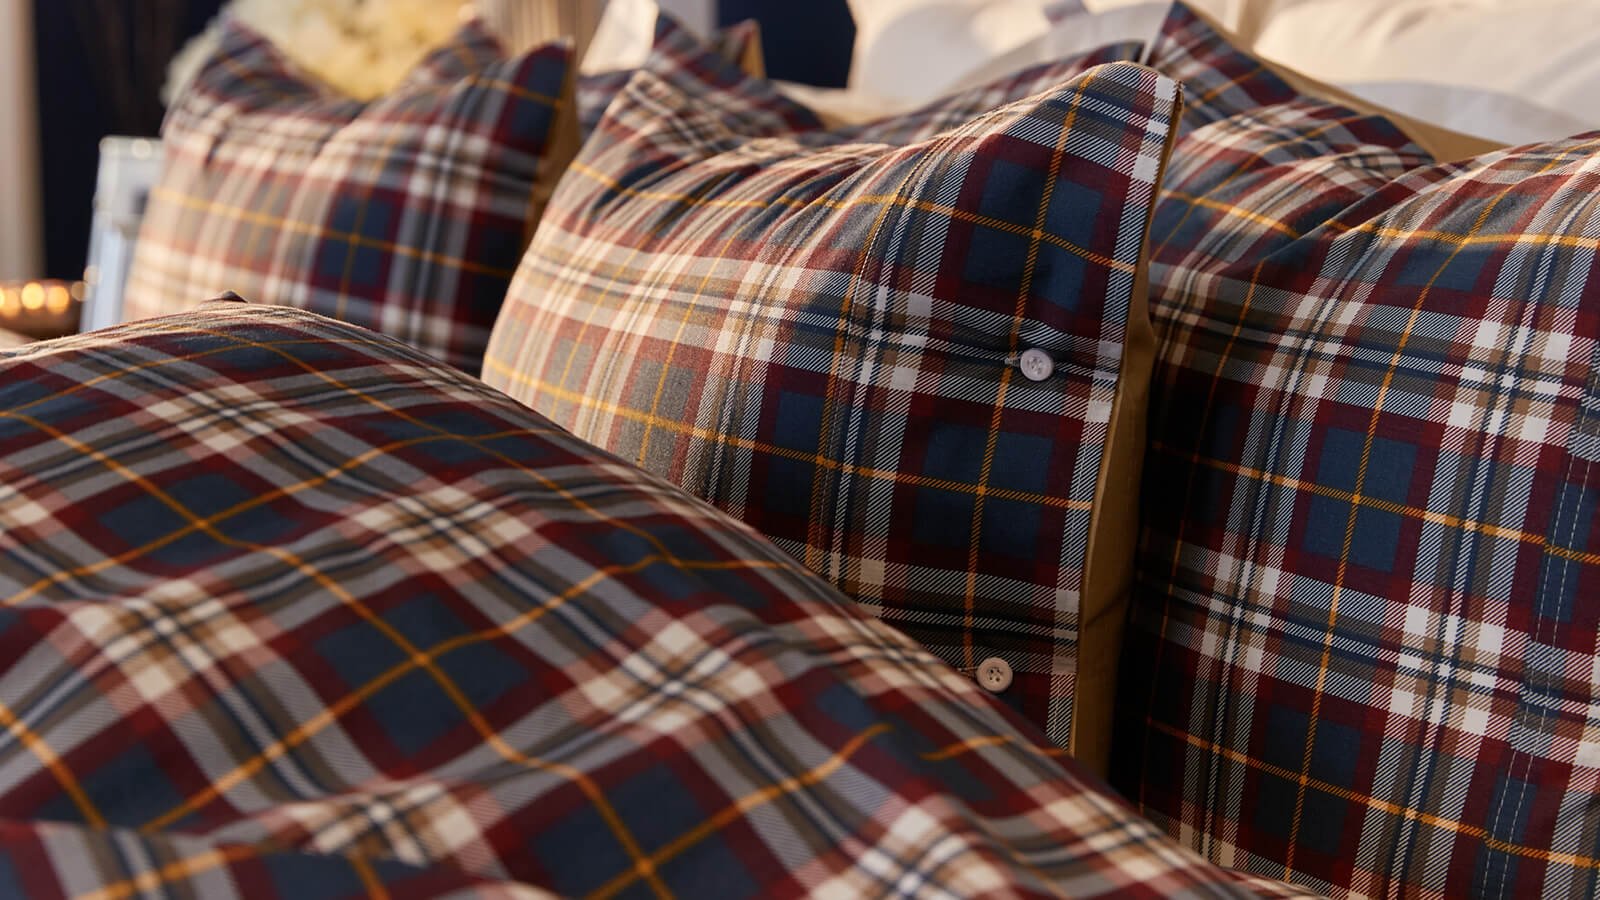 Tekstiler - Fine tekstiler i vakre nyanser og mønstre - Newport